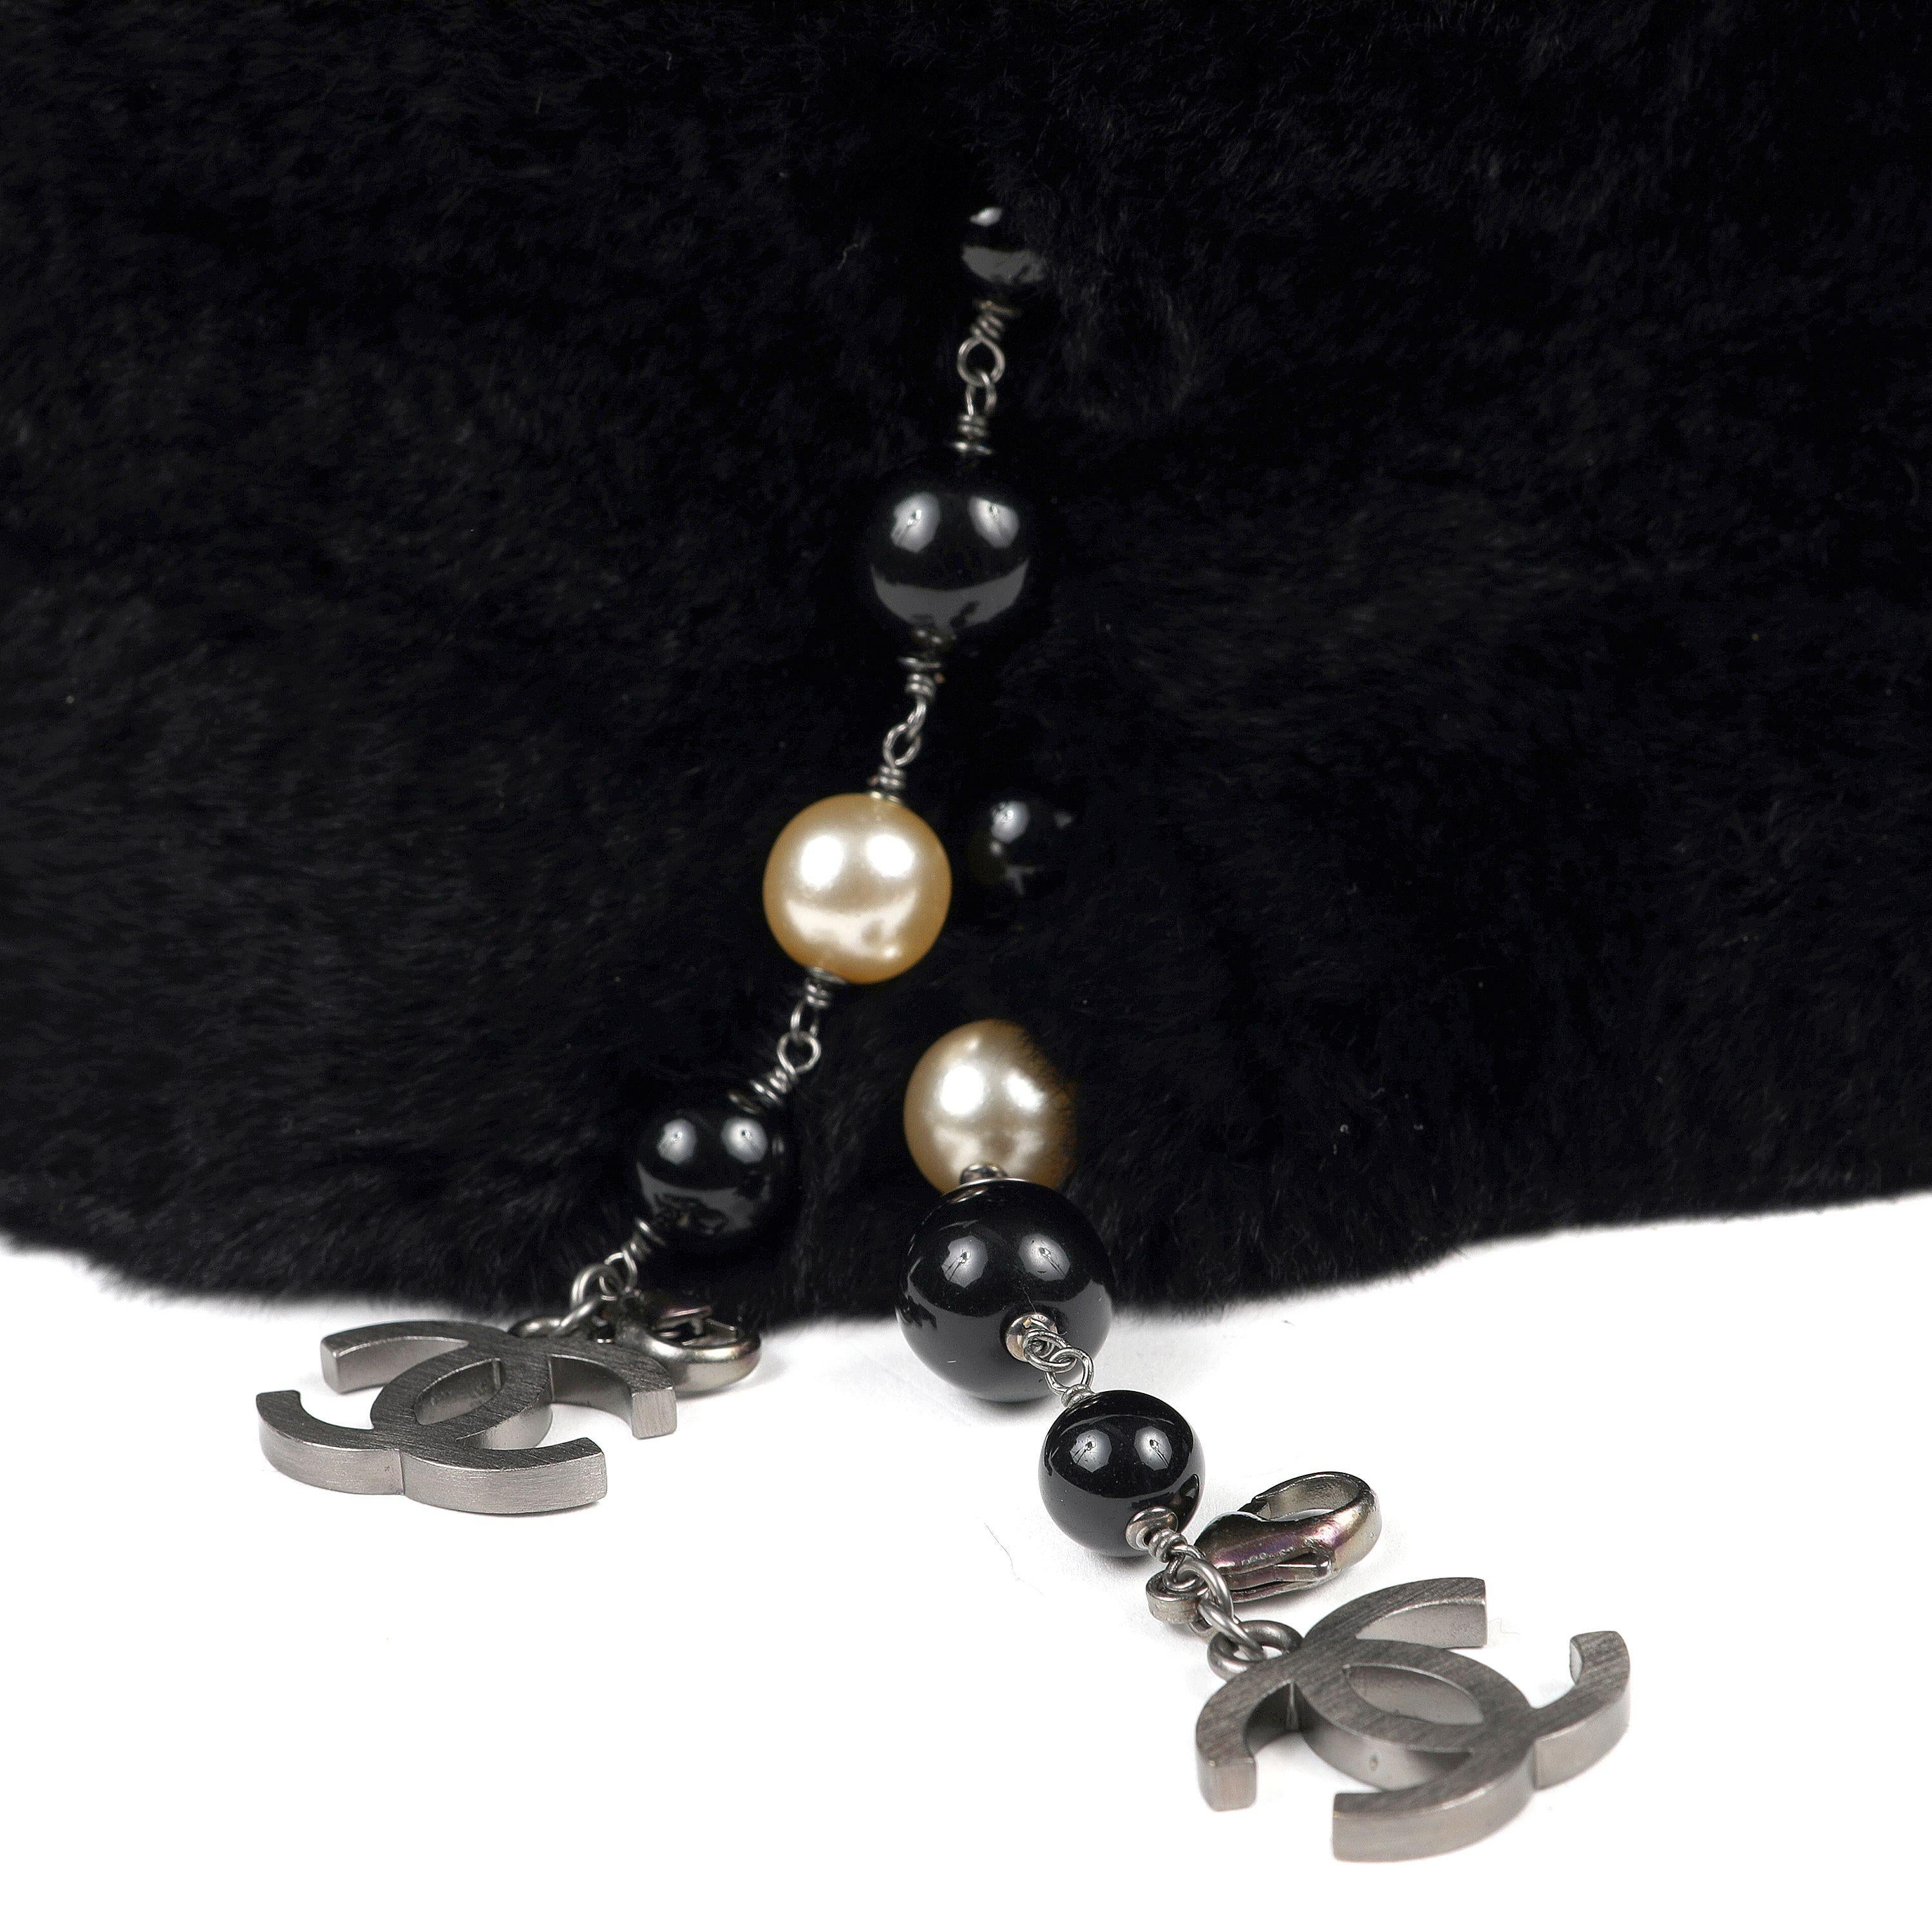 Cet authentique collier en fourrure de lapin noir de Chanel est impeccable.  Ce collier en fourrure de lapin noire, douce et luxueuse, est orné de fausses perles et de CC. 

ACO 13757

